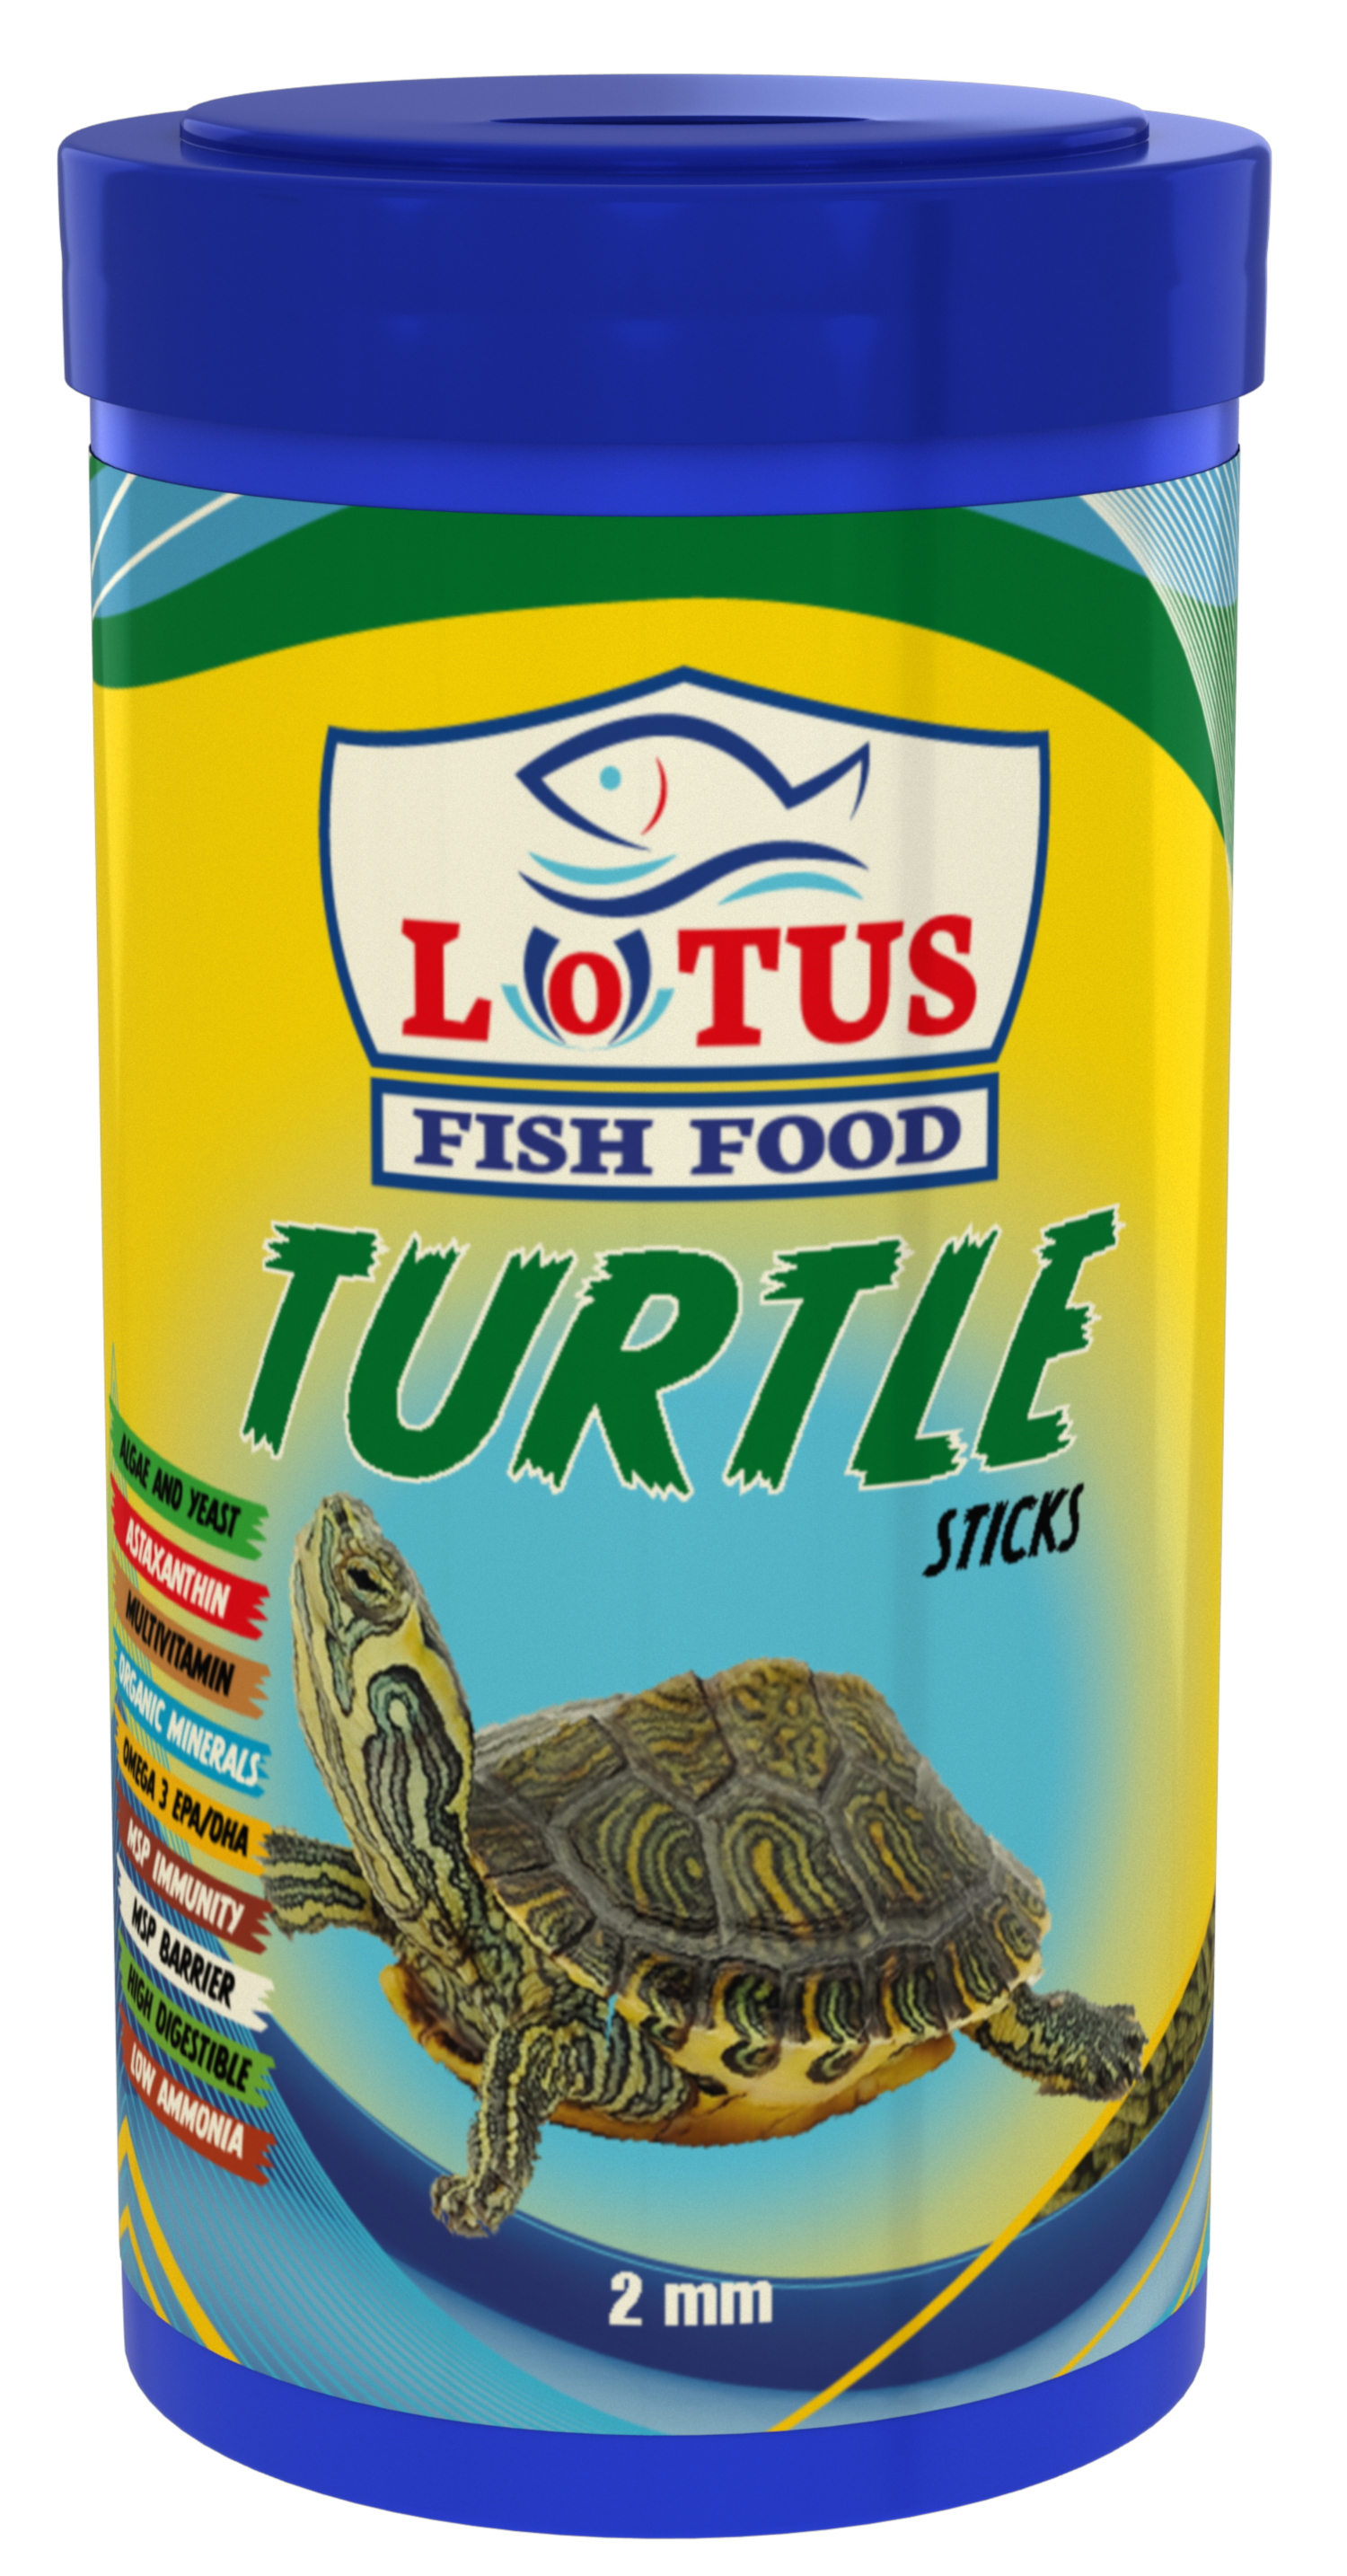 Lotus Turtle Sticks 1000 ml ve Amore 1000 ml Sürüngen ve Kaplumbağa Yemi ve Multivitamin